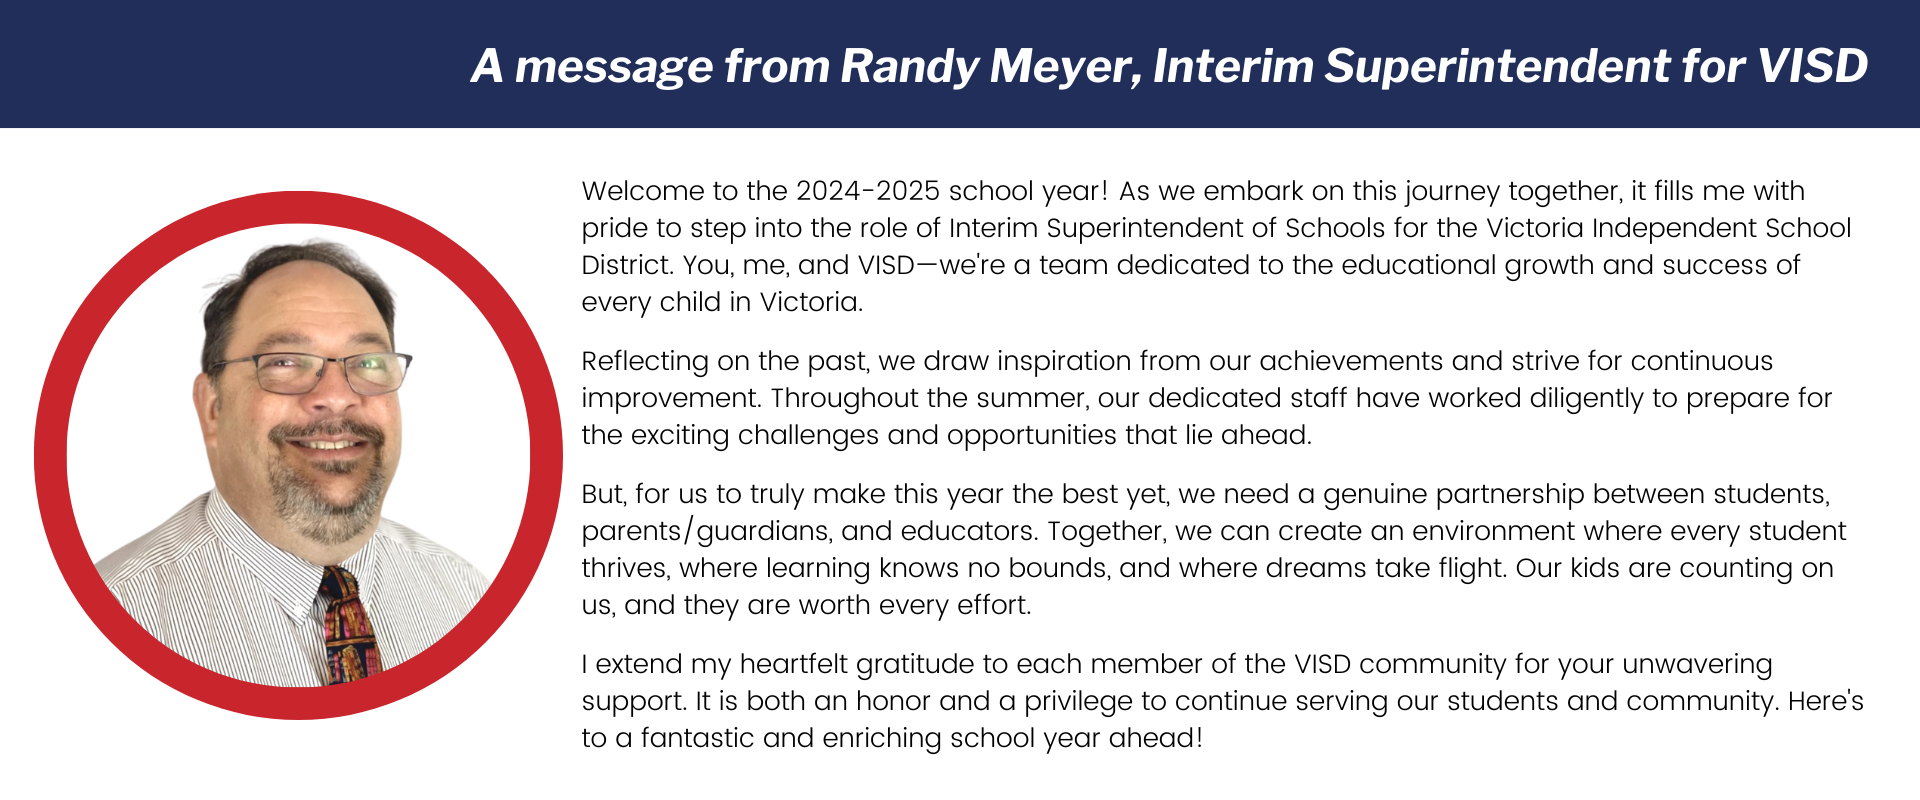 A message from interim superintendent Randy Meyer